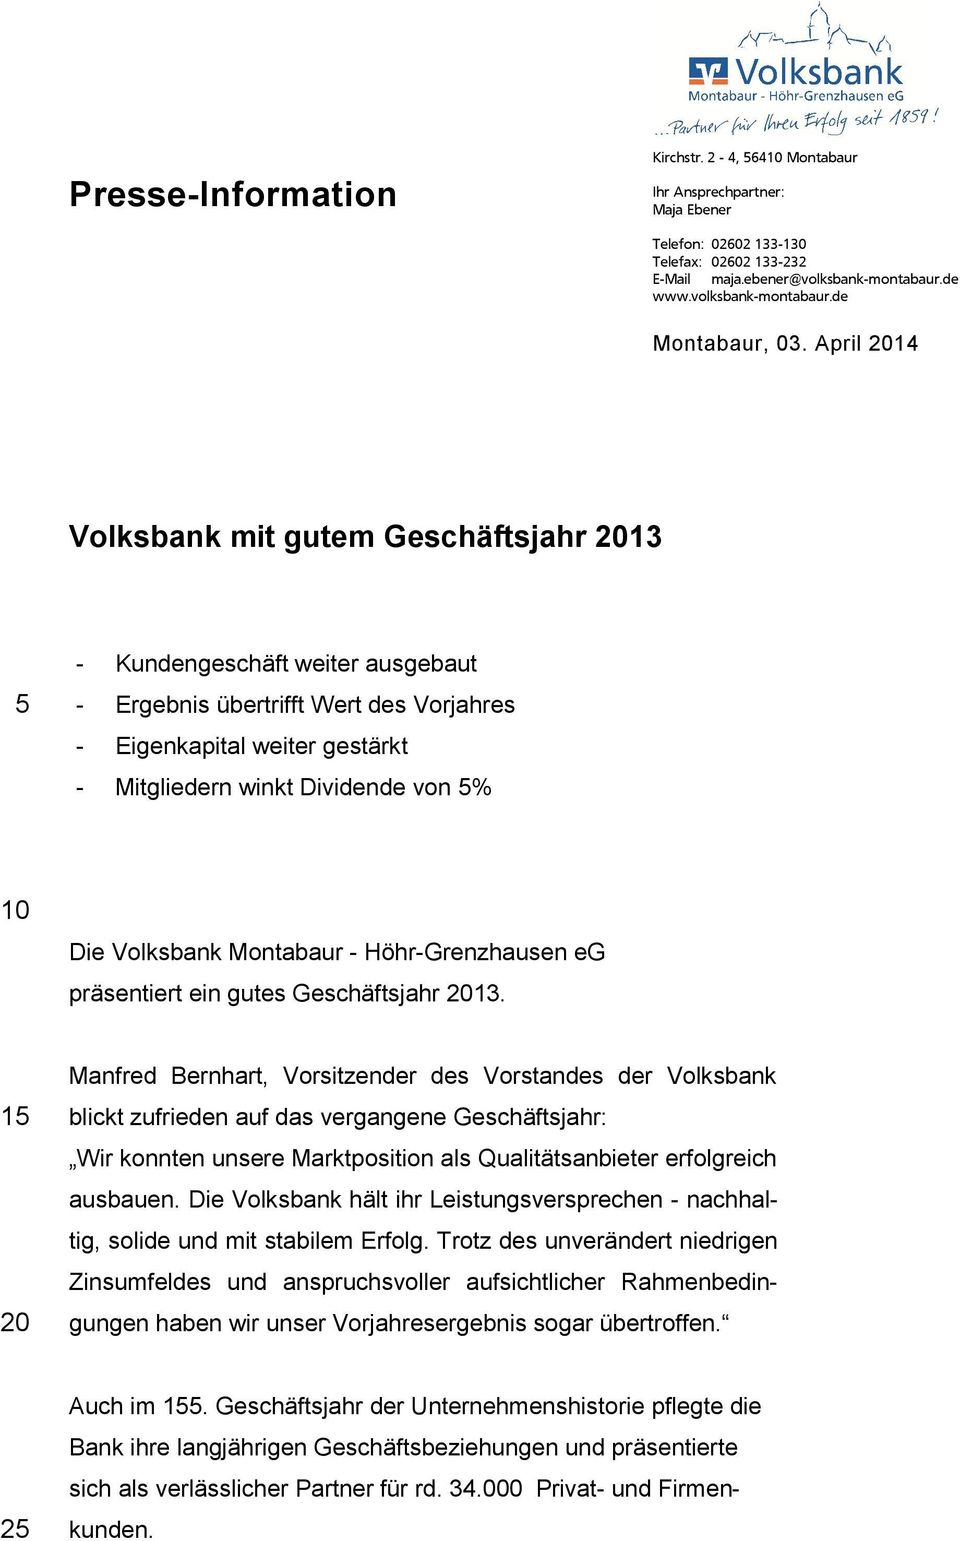 Die Volksbank Montabaur - Höhr-Grenzhausen eg präsentiert ein gutes Geschäftsjahr 2013.